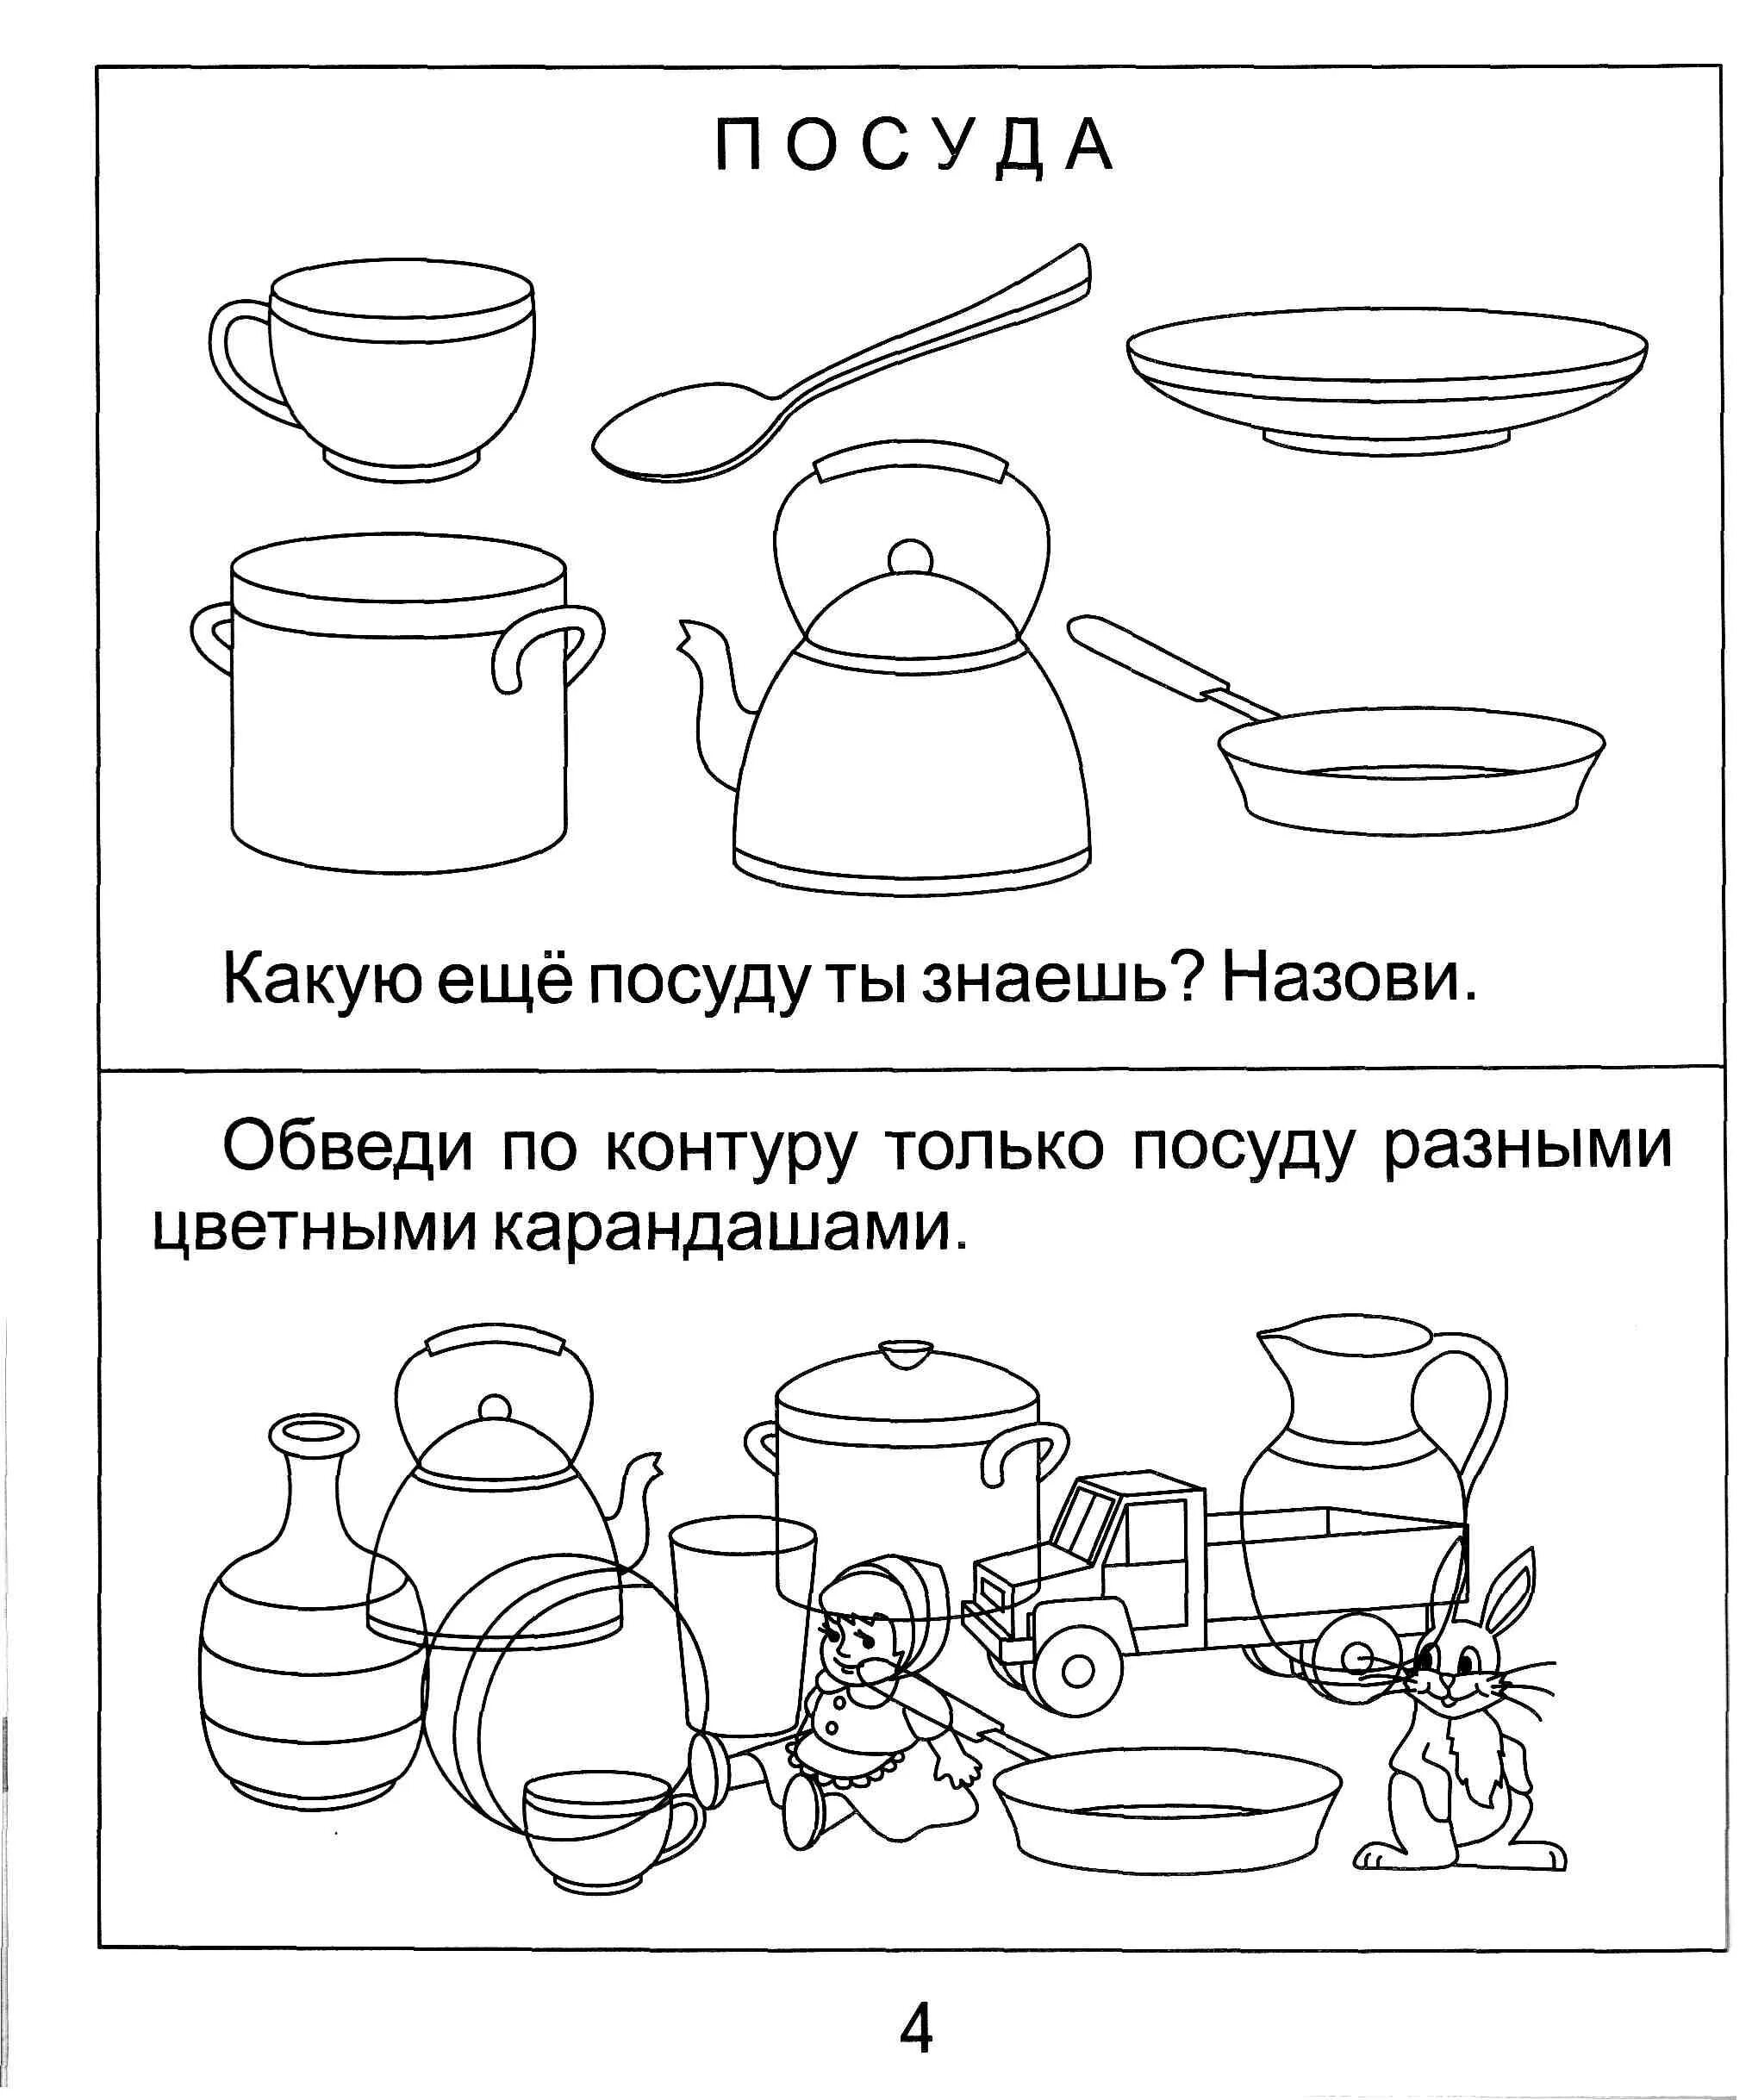 Посуда для детей дошкольного возраста #24